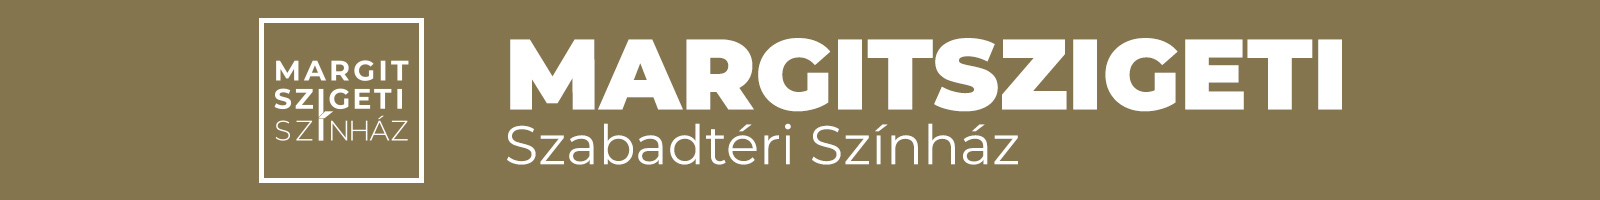 Margitszigeti Színház fejléc